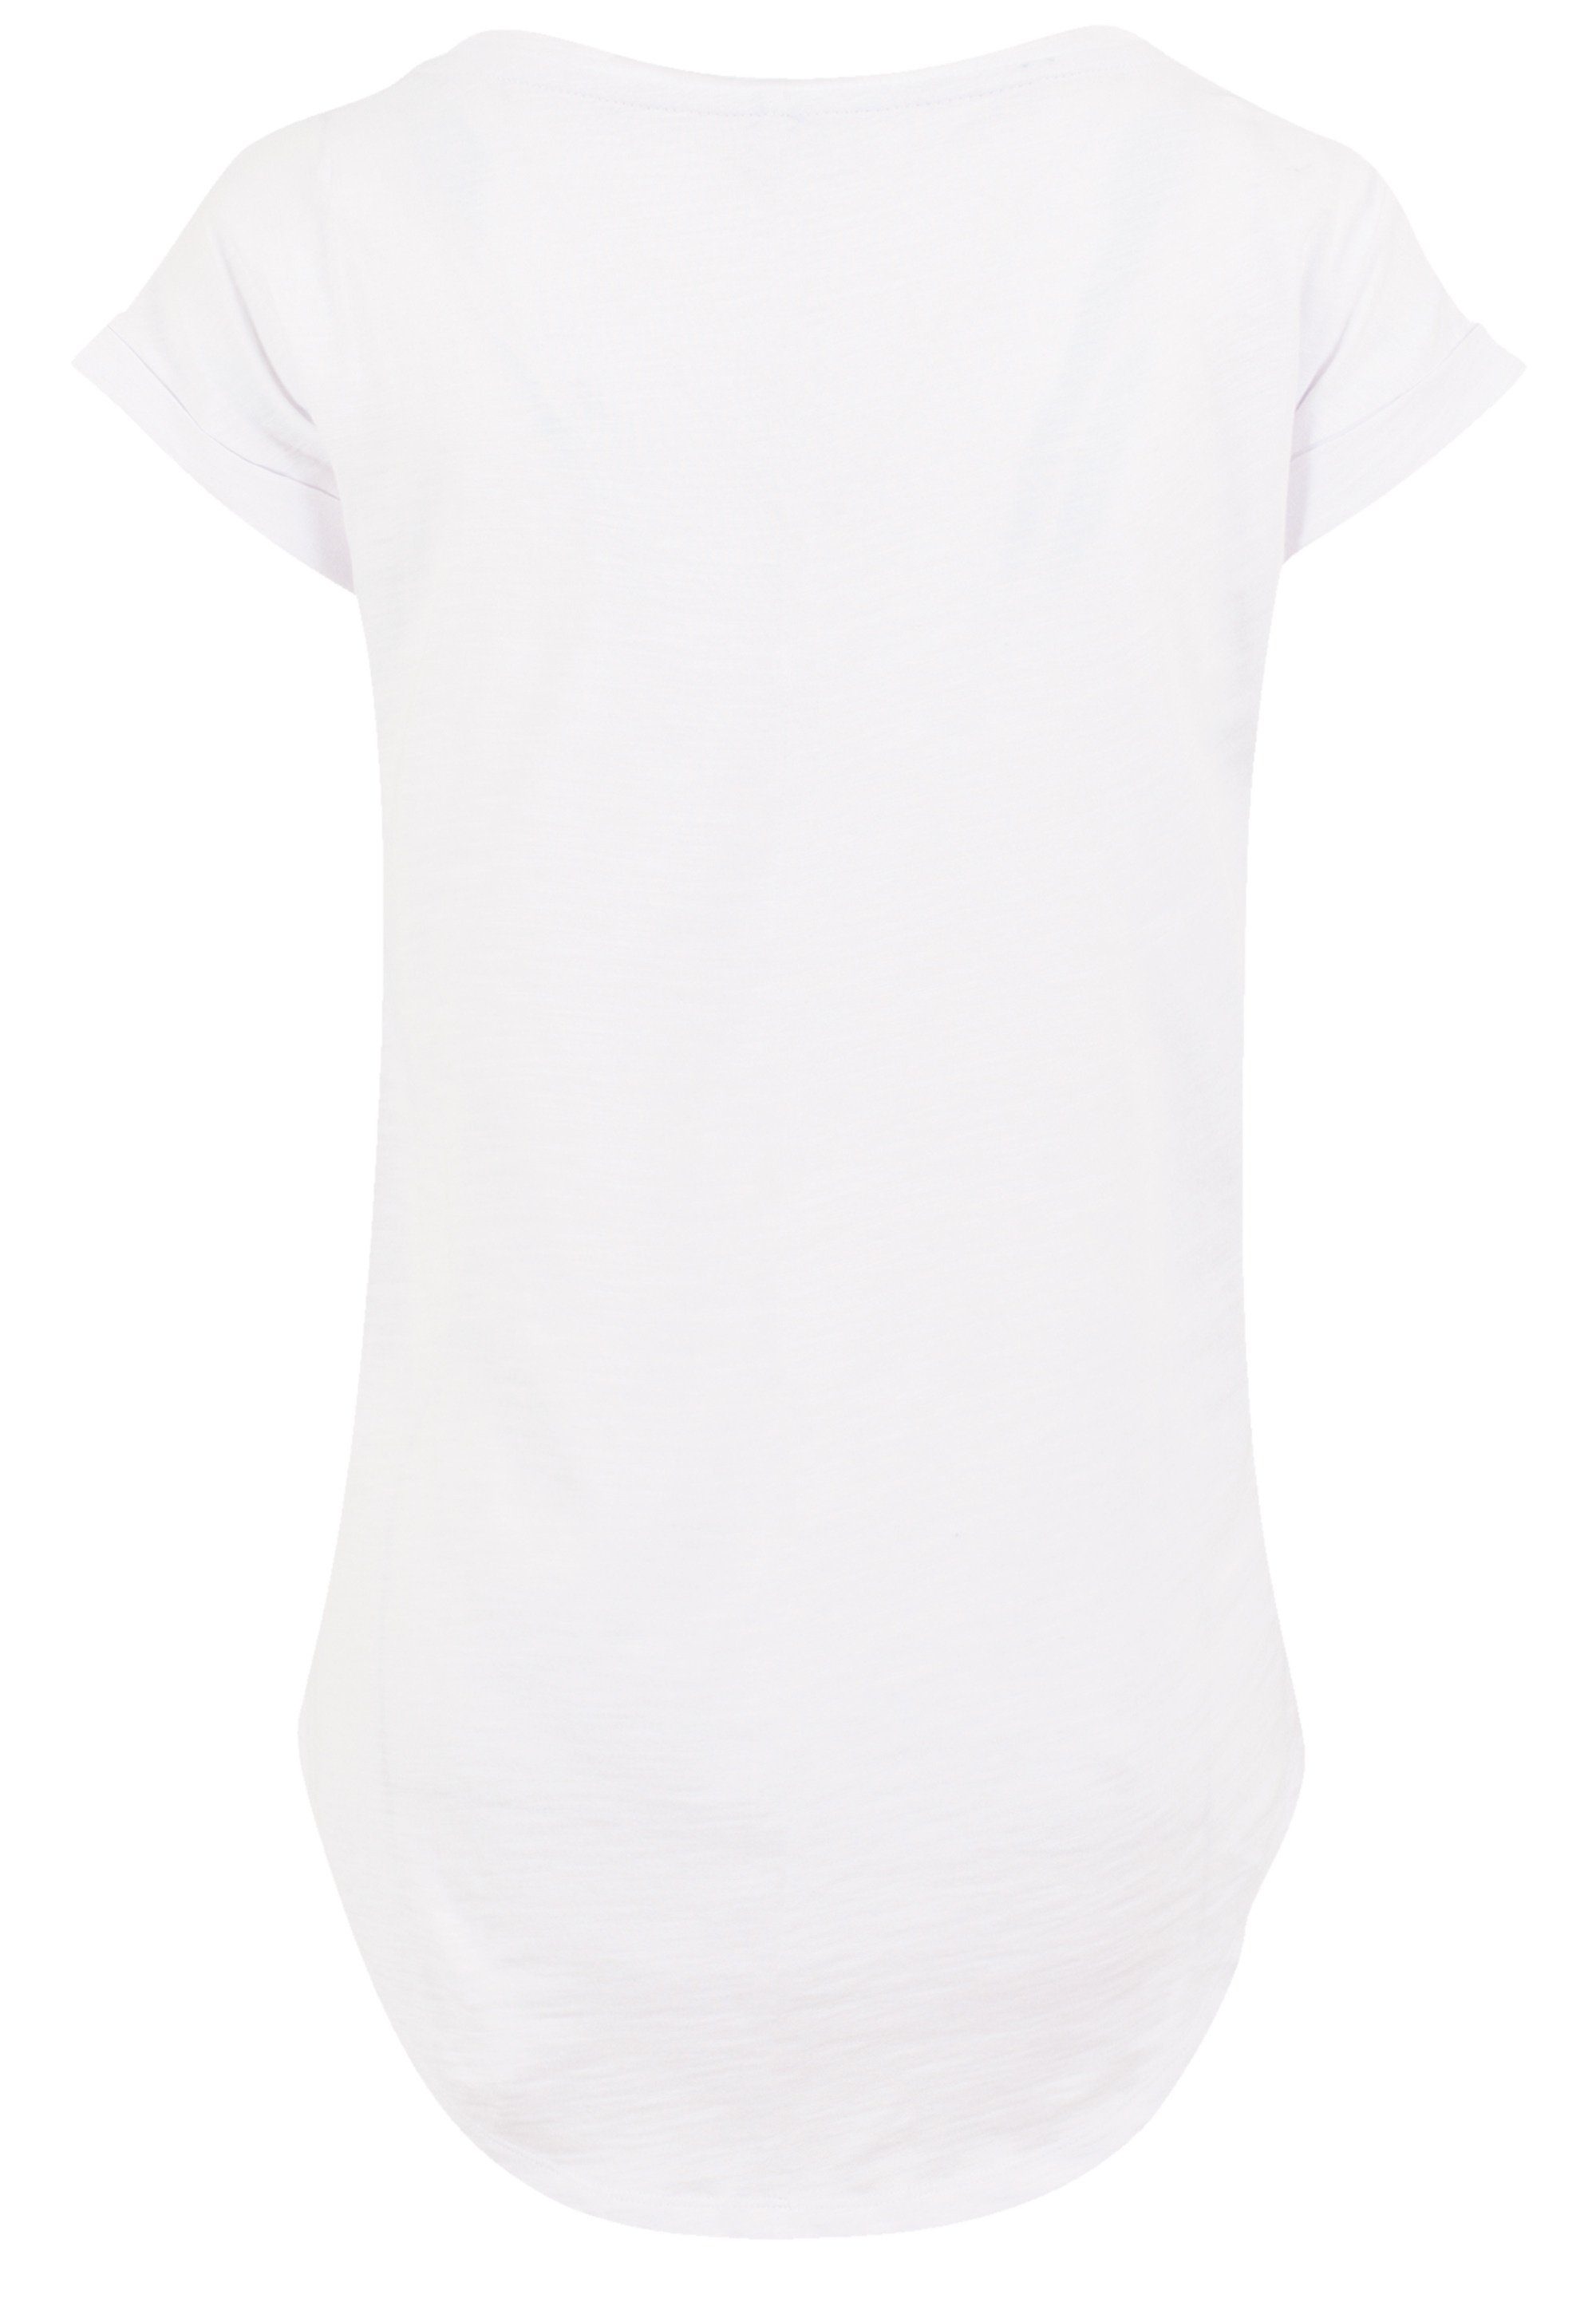 F4NT4STIC T-Shirt Christmas Deer Premium Qualität, Rock-Musik, Band, Sehr  weicher Baumwollstoff mit hohem Tragekomfort | T-Shirts